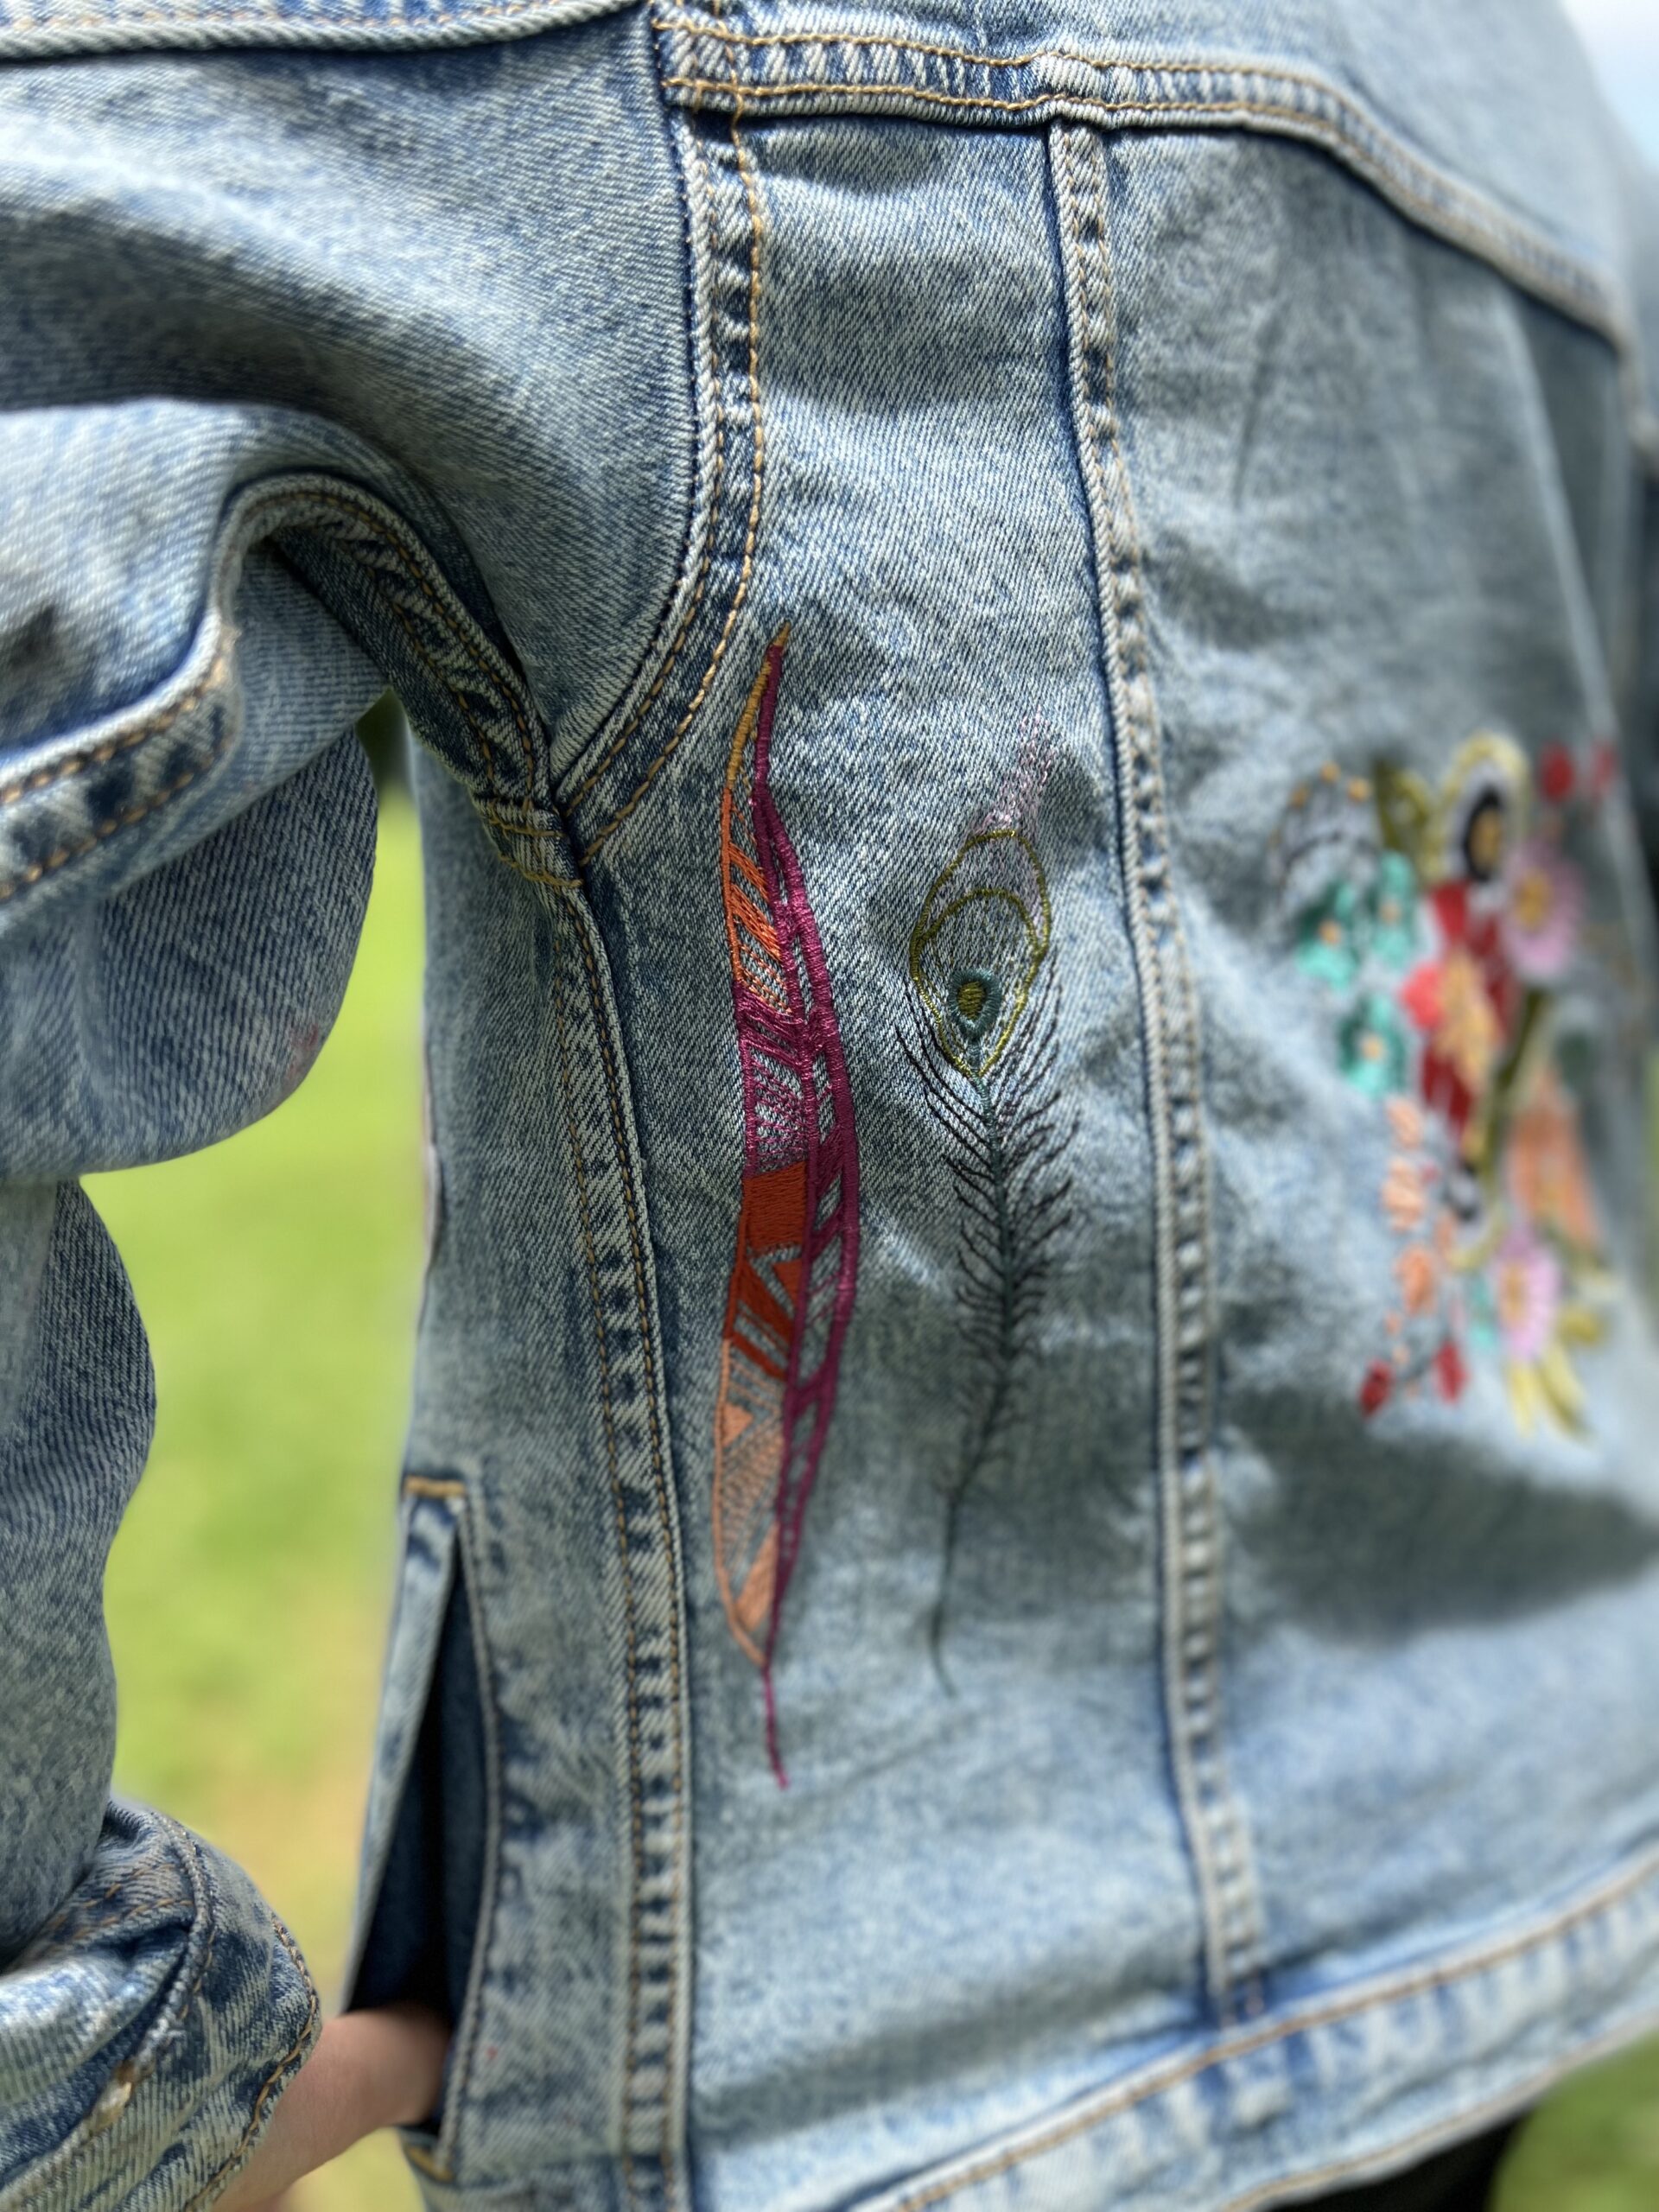 Embroidered Denim Jacket : Olivia Jane Handcrafted